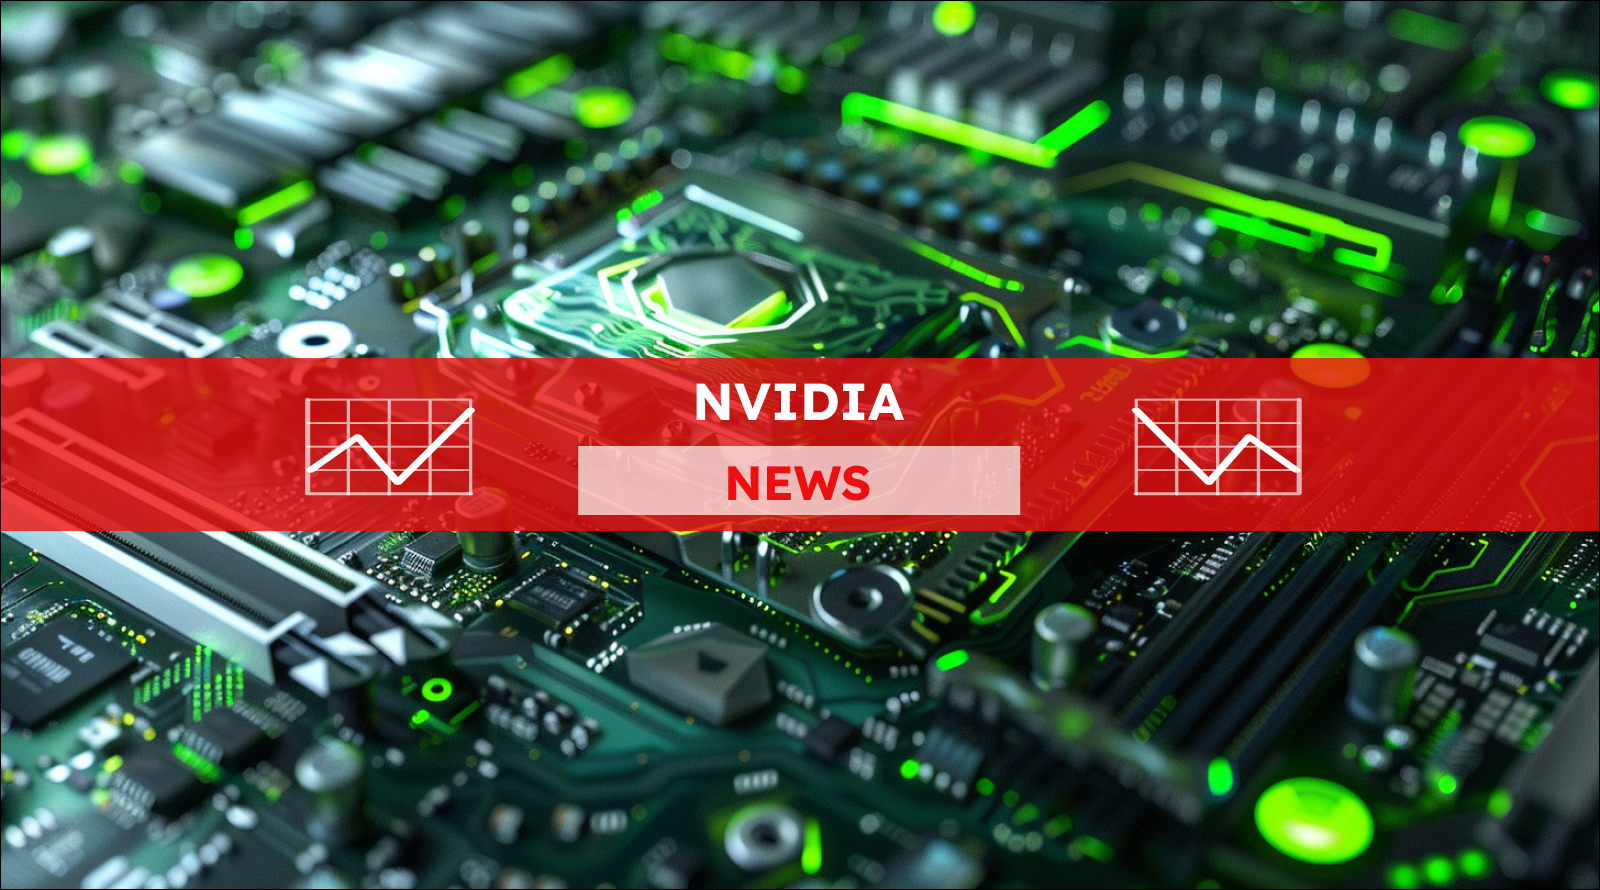 Eine Nahaufnahme eines Mikrochips in der Mitte einer Computerplatine, umgeben von einer Vielzahl von elektronischen Komponenten, die alle in grünes Licht getaucht sind,über dem Bild ist ein Nvidia NEWS-Banner